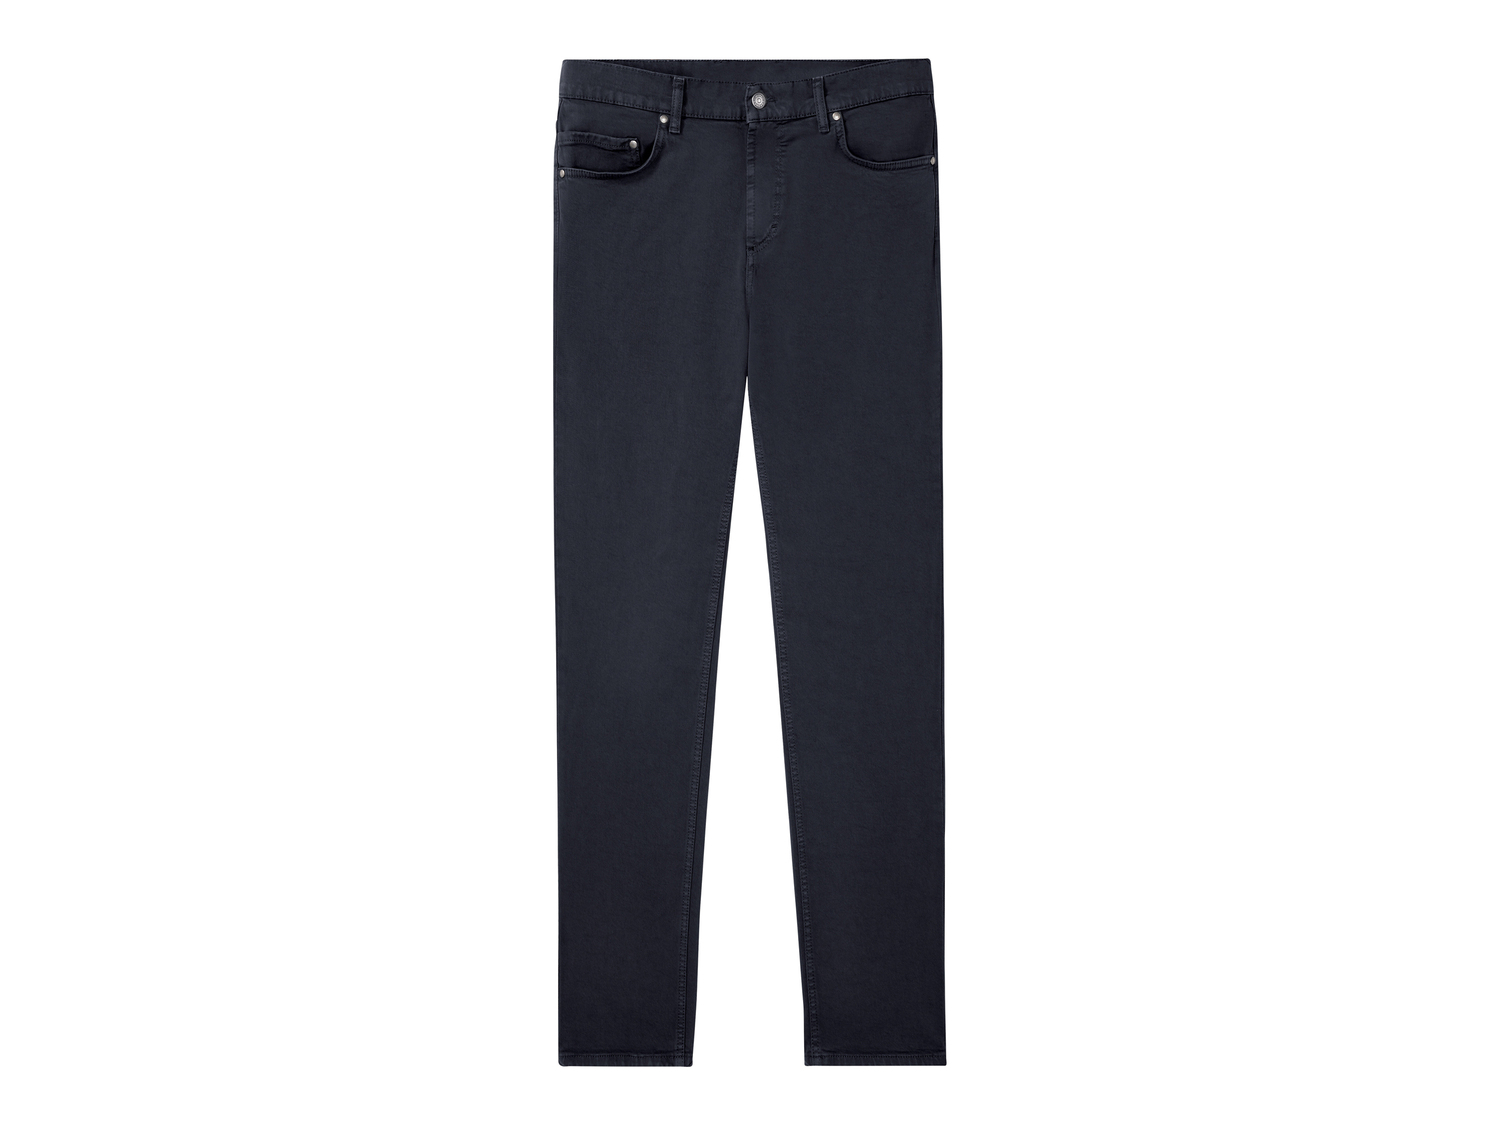 Jeans Regular da uomo Carrera, prezzo 29.99 &#8364; 
Misure: 48-54
Taglie disponibili

Caratteristiche
 ...